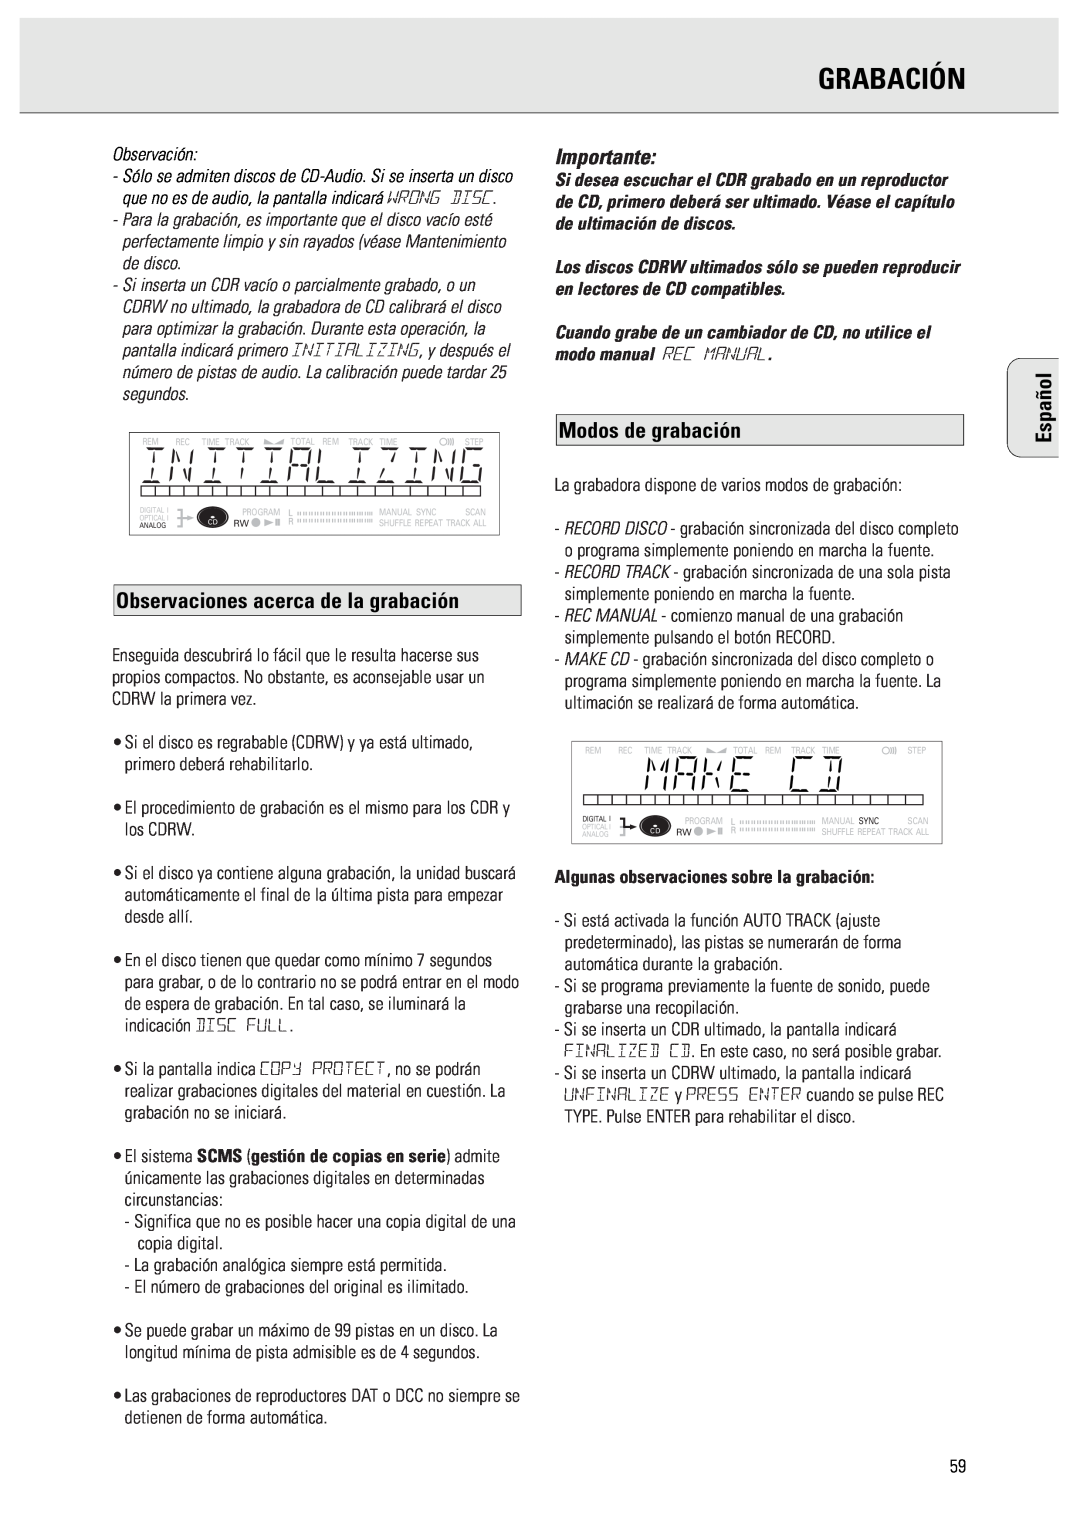 Philips CDR570 manual Grabación, Observaciones acerca de la grabación, Importante, Modos de grabación, Español, Observación 